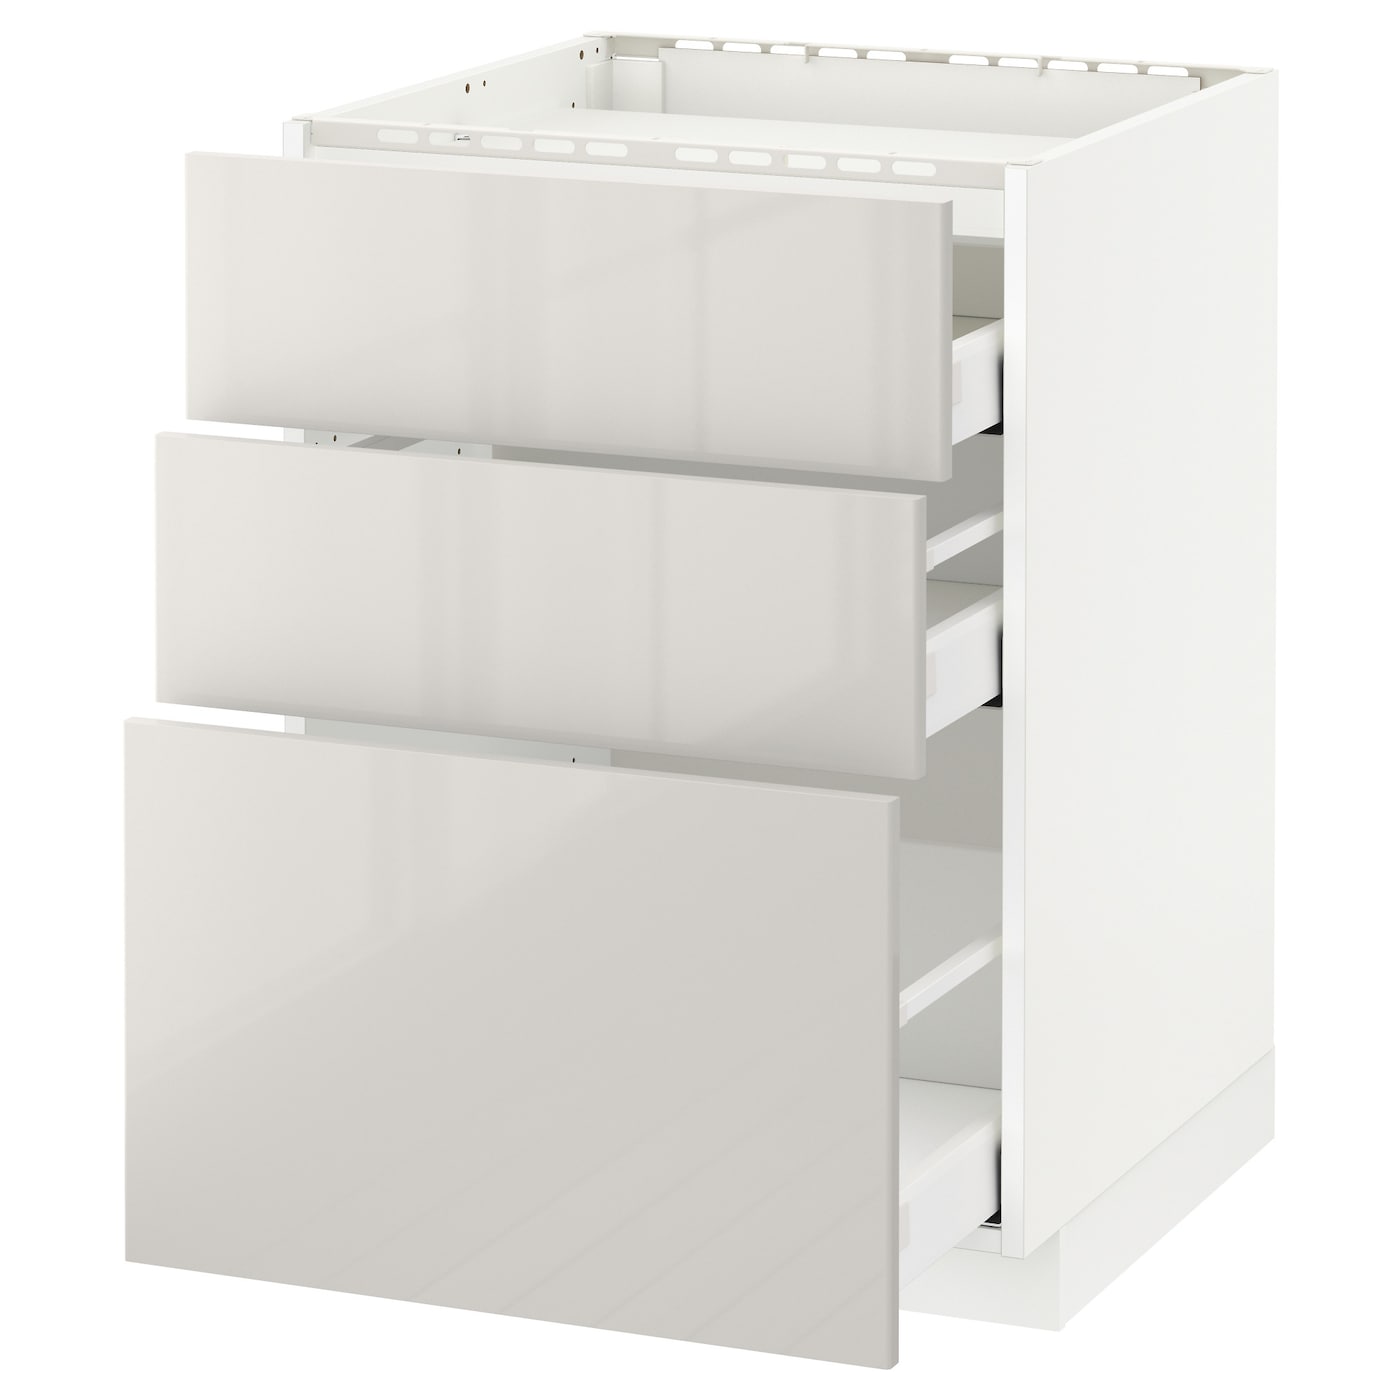 Напольный шкаф - IKEA METOD MAXIMERA, 88x62x60см, белый/светло-серый, МЕТОД МАКСИМЕРА ИКЕА